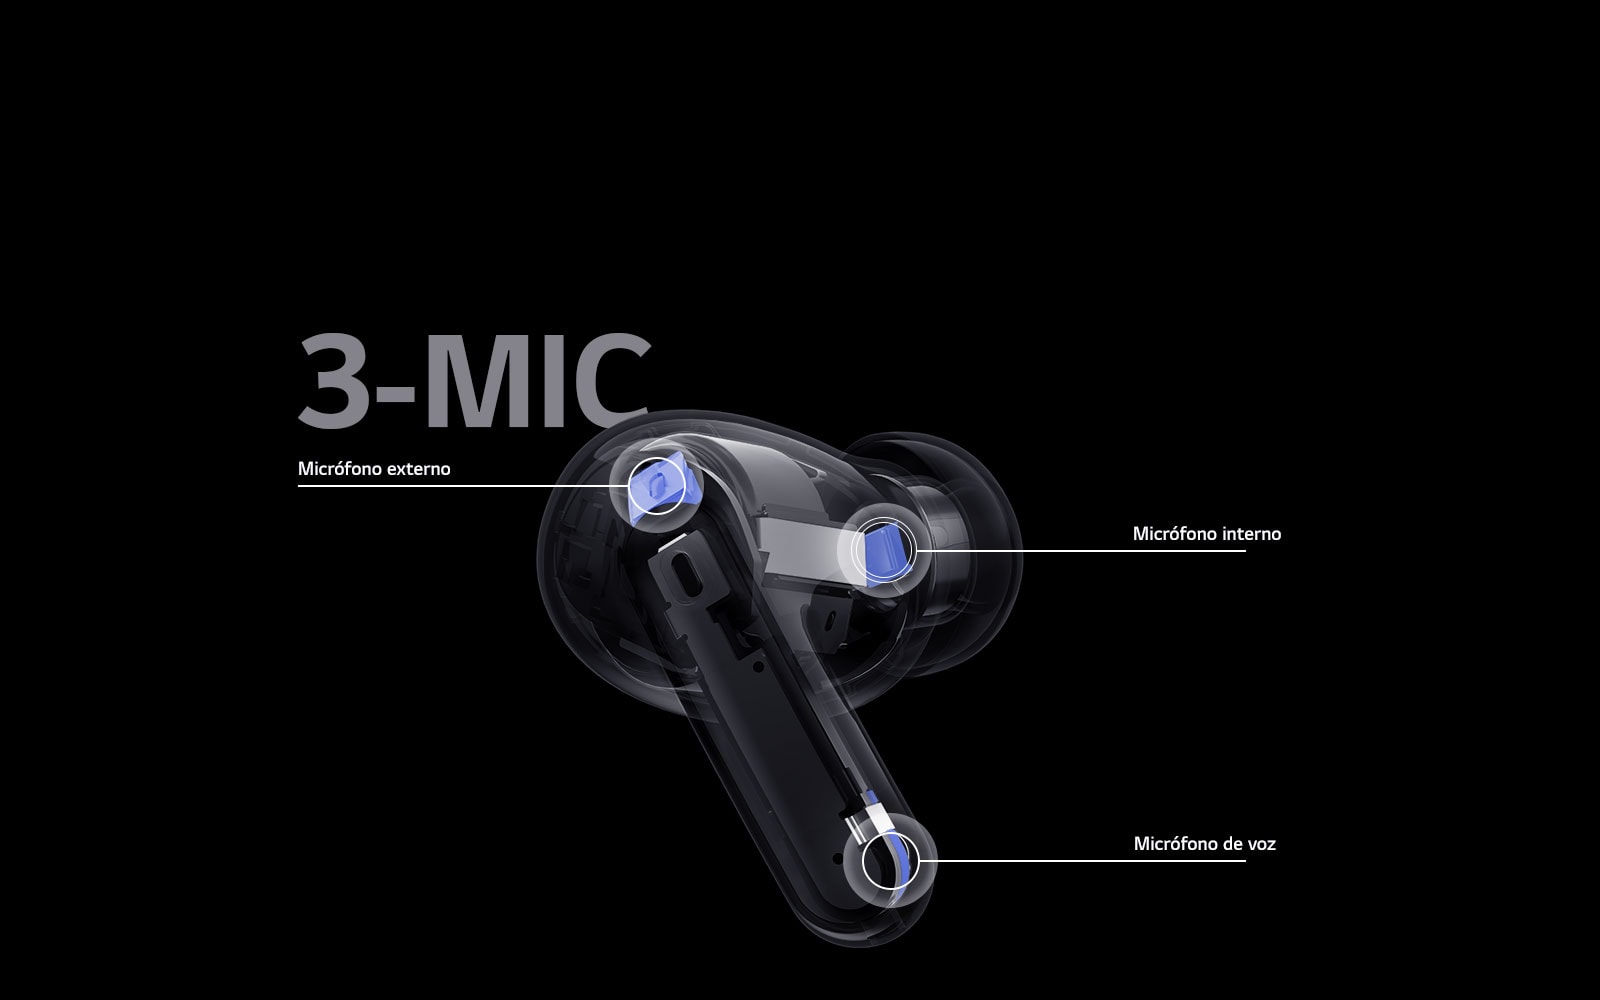 La imagen de los auriculares en perspectiva contiene la posición del micrófono externo, el micrófono interno y el micrófono de voz junto con la palabra 3-MIC en la imagen de los auriculares.